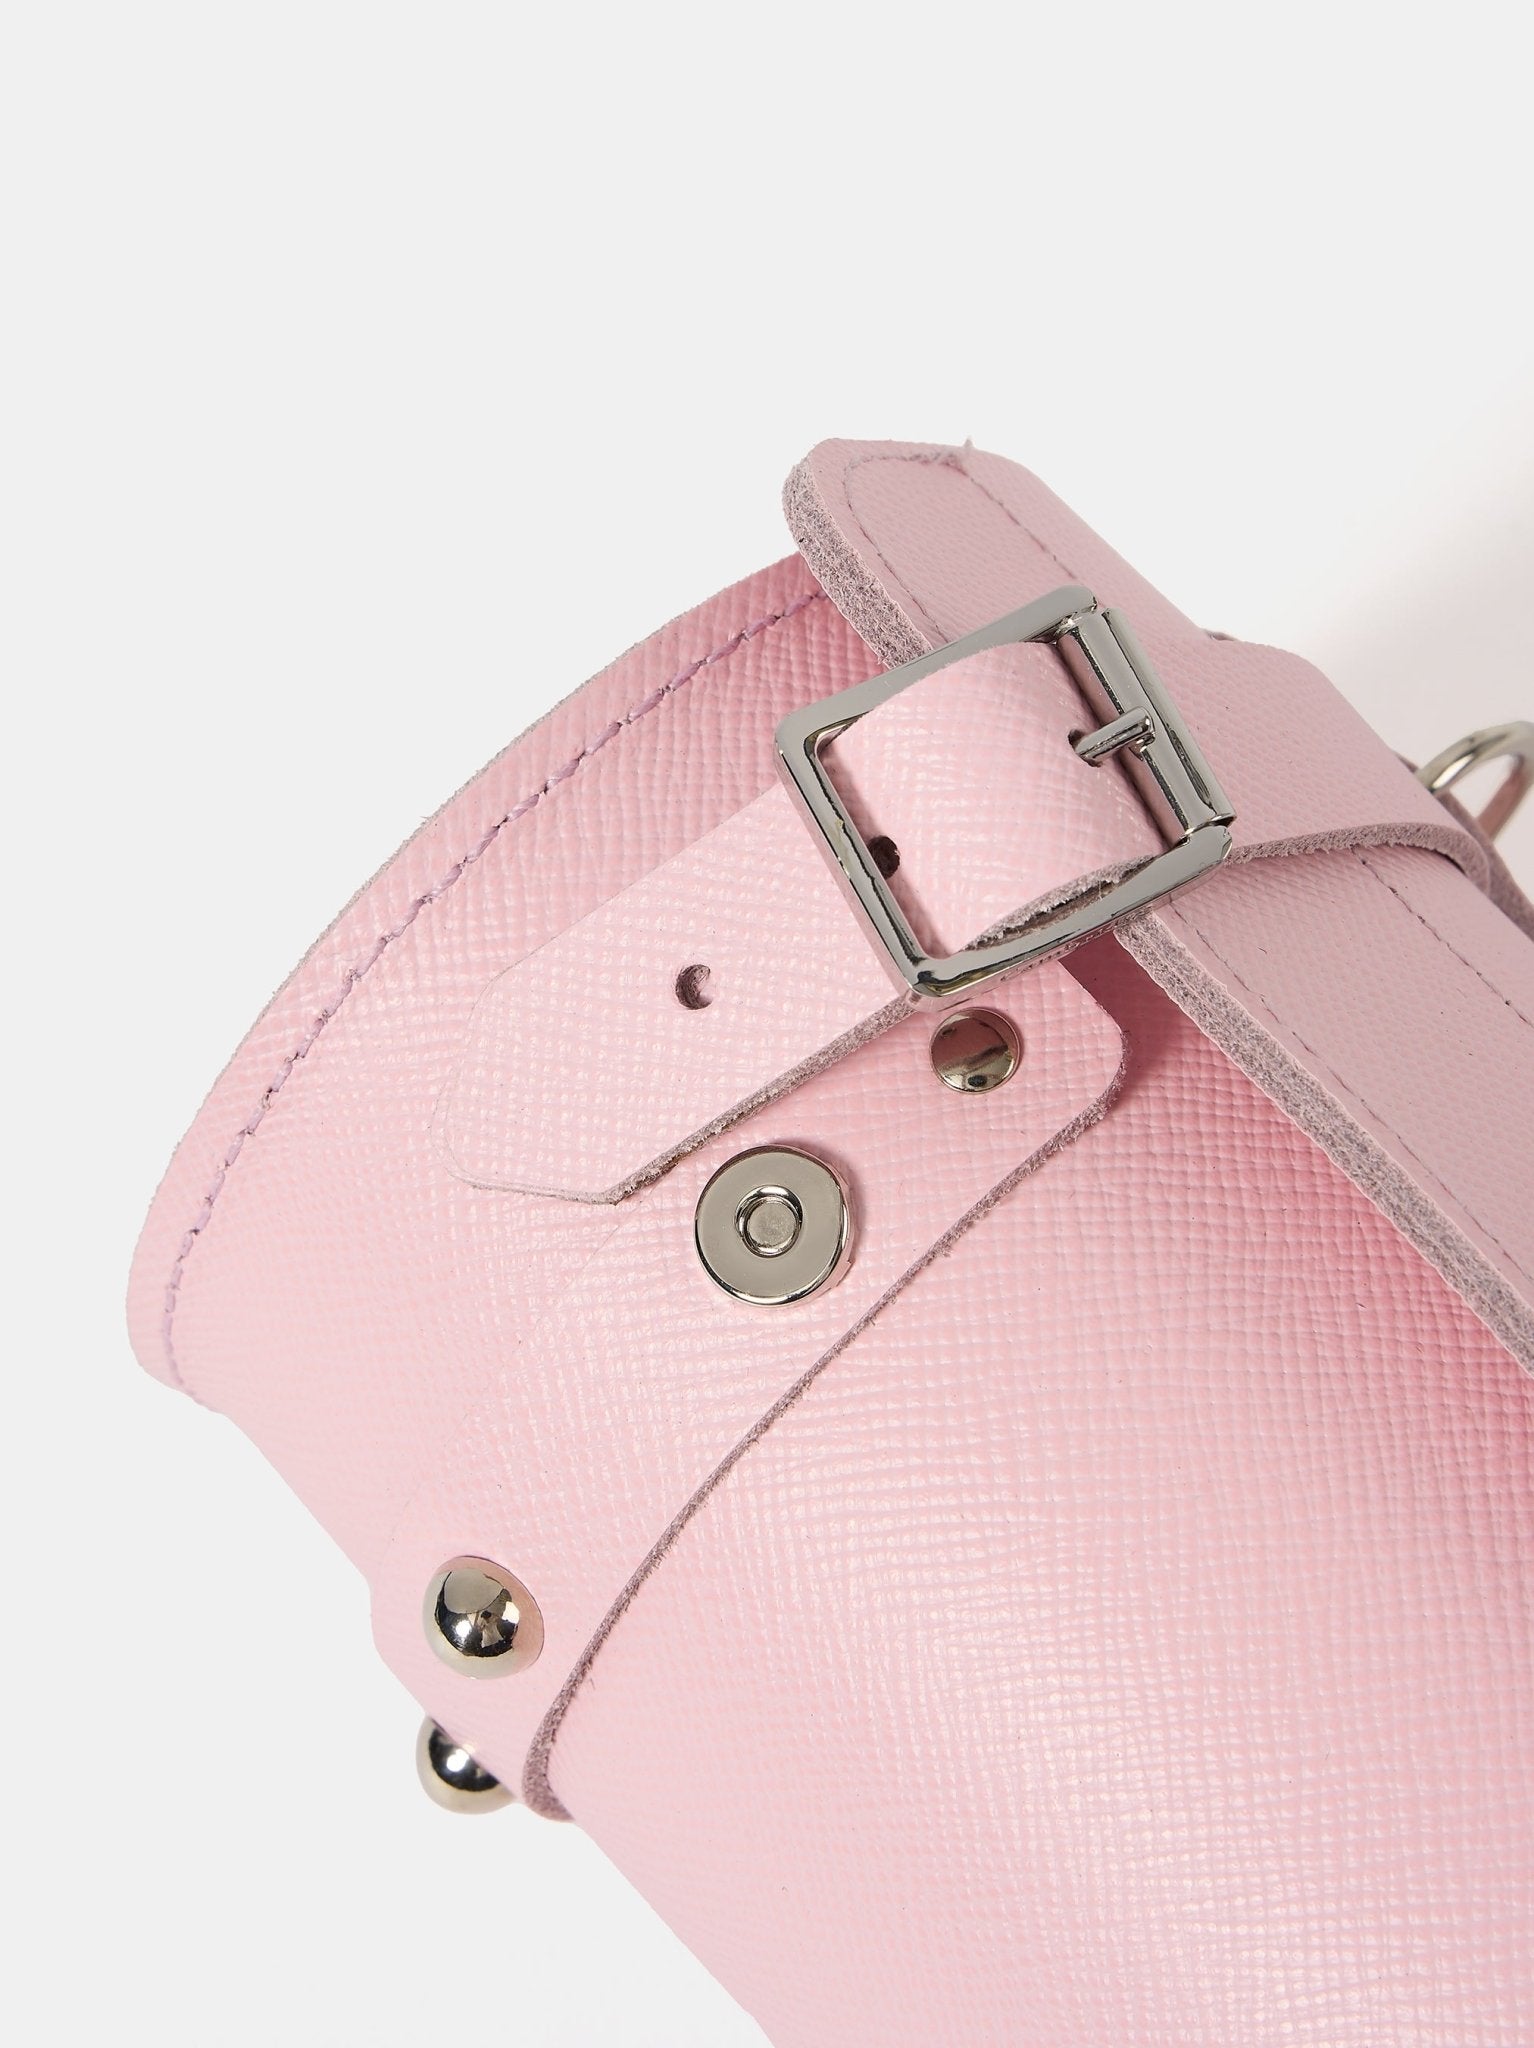 The Mini Bowls Bag - Fondant Pink Saffiano - Cambridge Satchel US Store